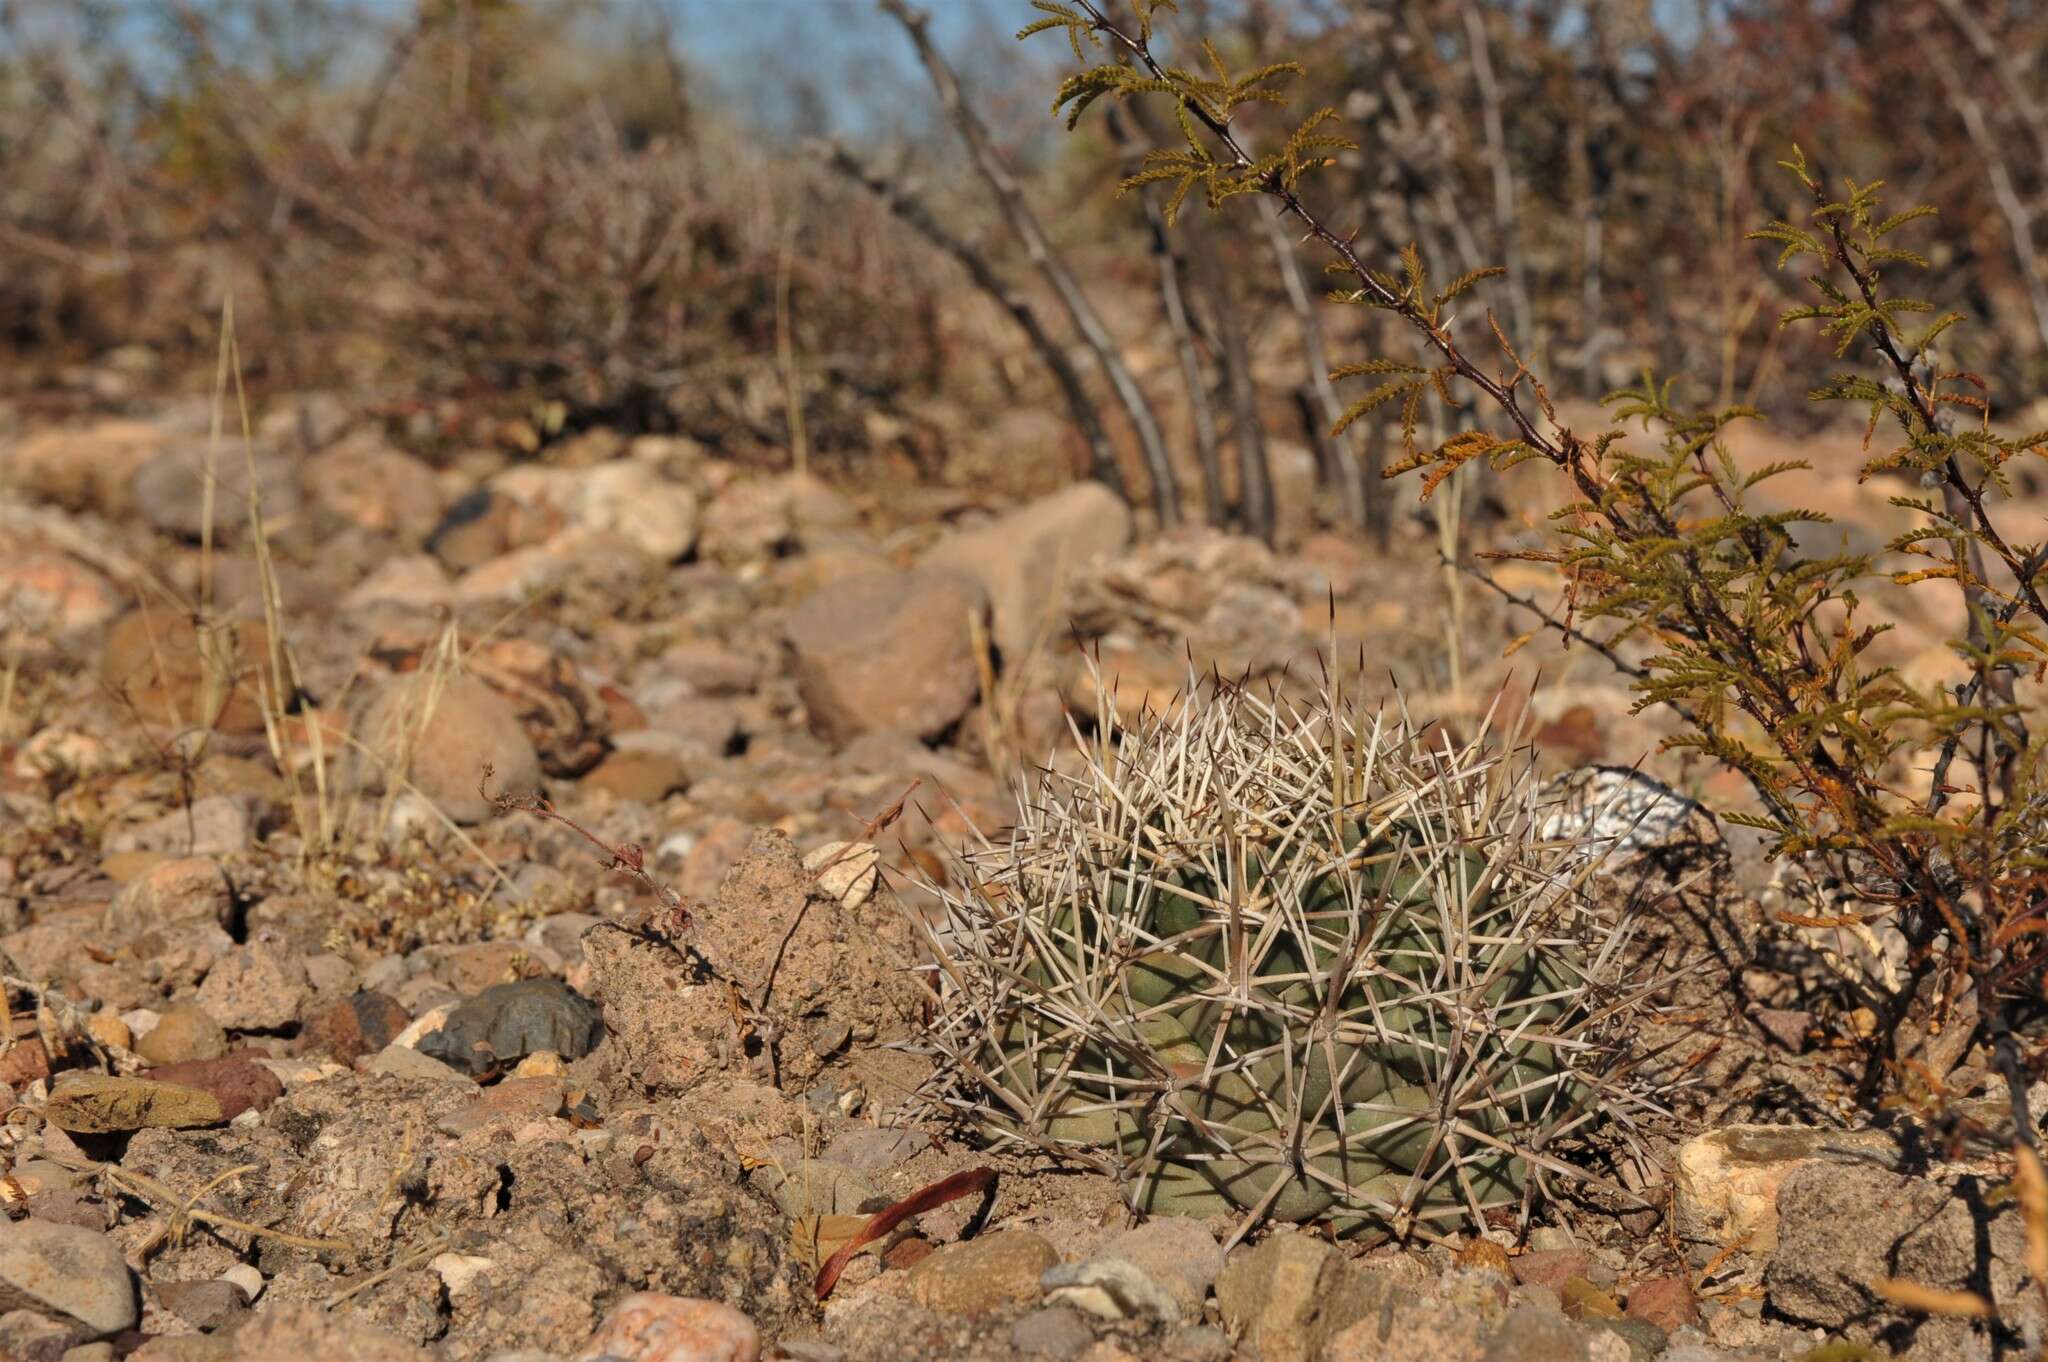 Image of Scheer's beehive cactus